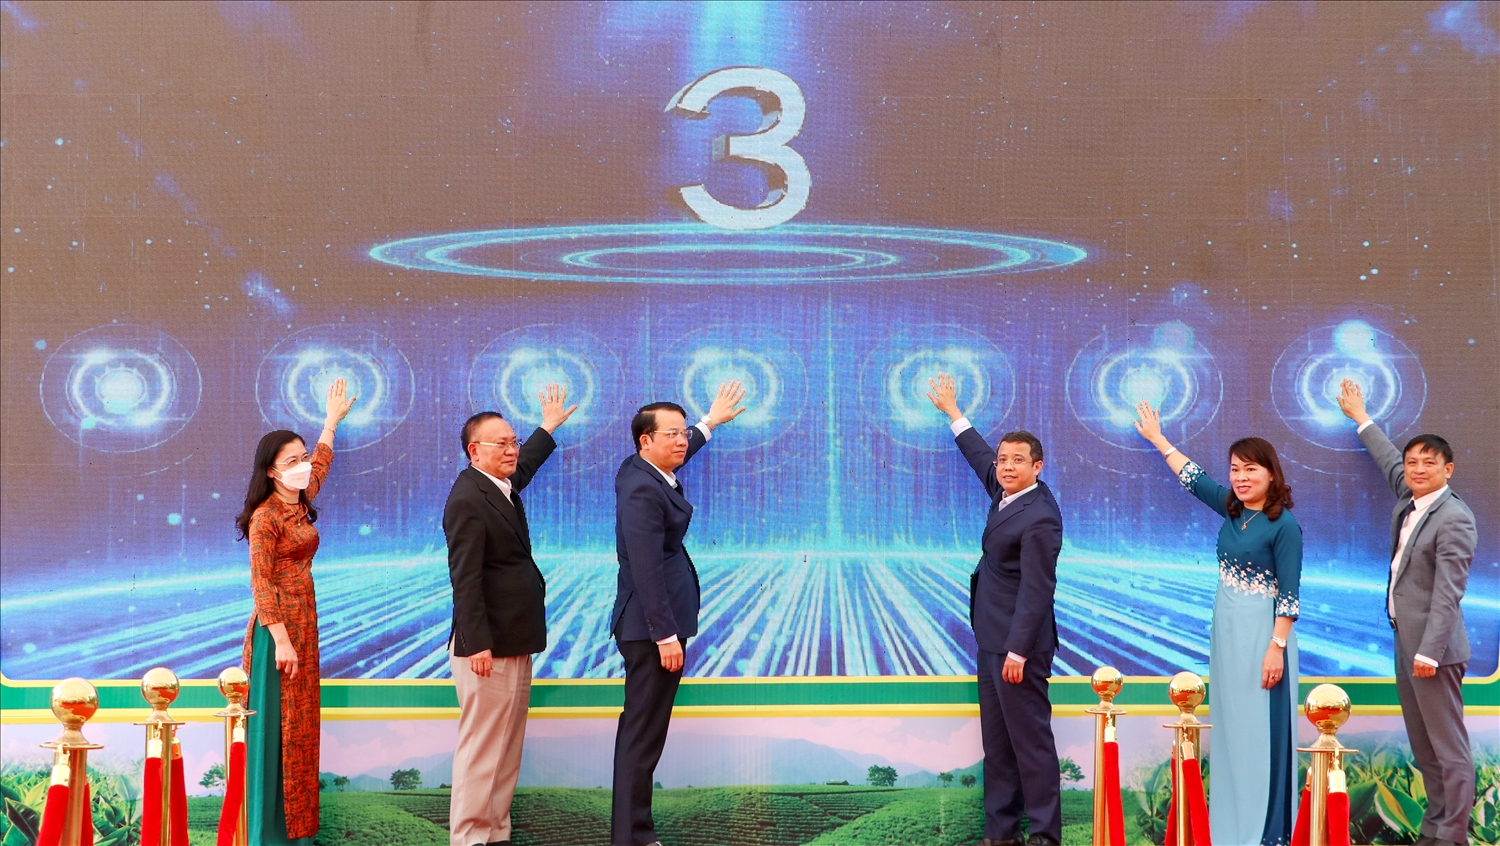 Các vị lãnh đạo tỉnh Thái Nguyên, lãnh đạo Tổng cục Du lịch nhấn nút khai trương khu Trải nghiệm về nguồn - ATK Thủ đô gió ngàn